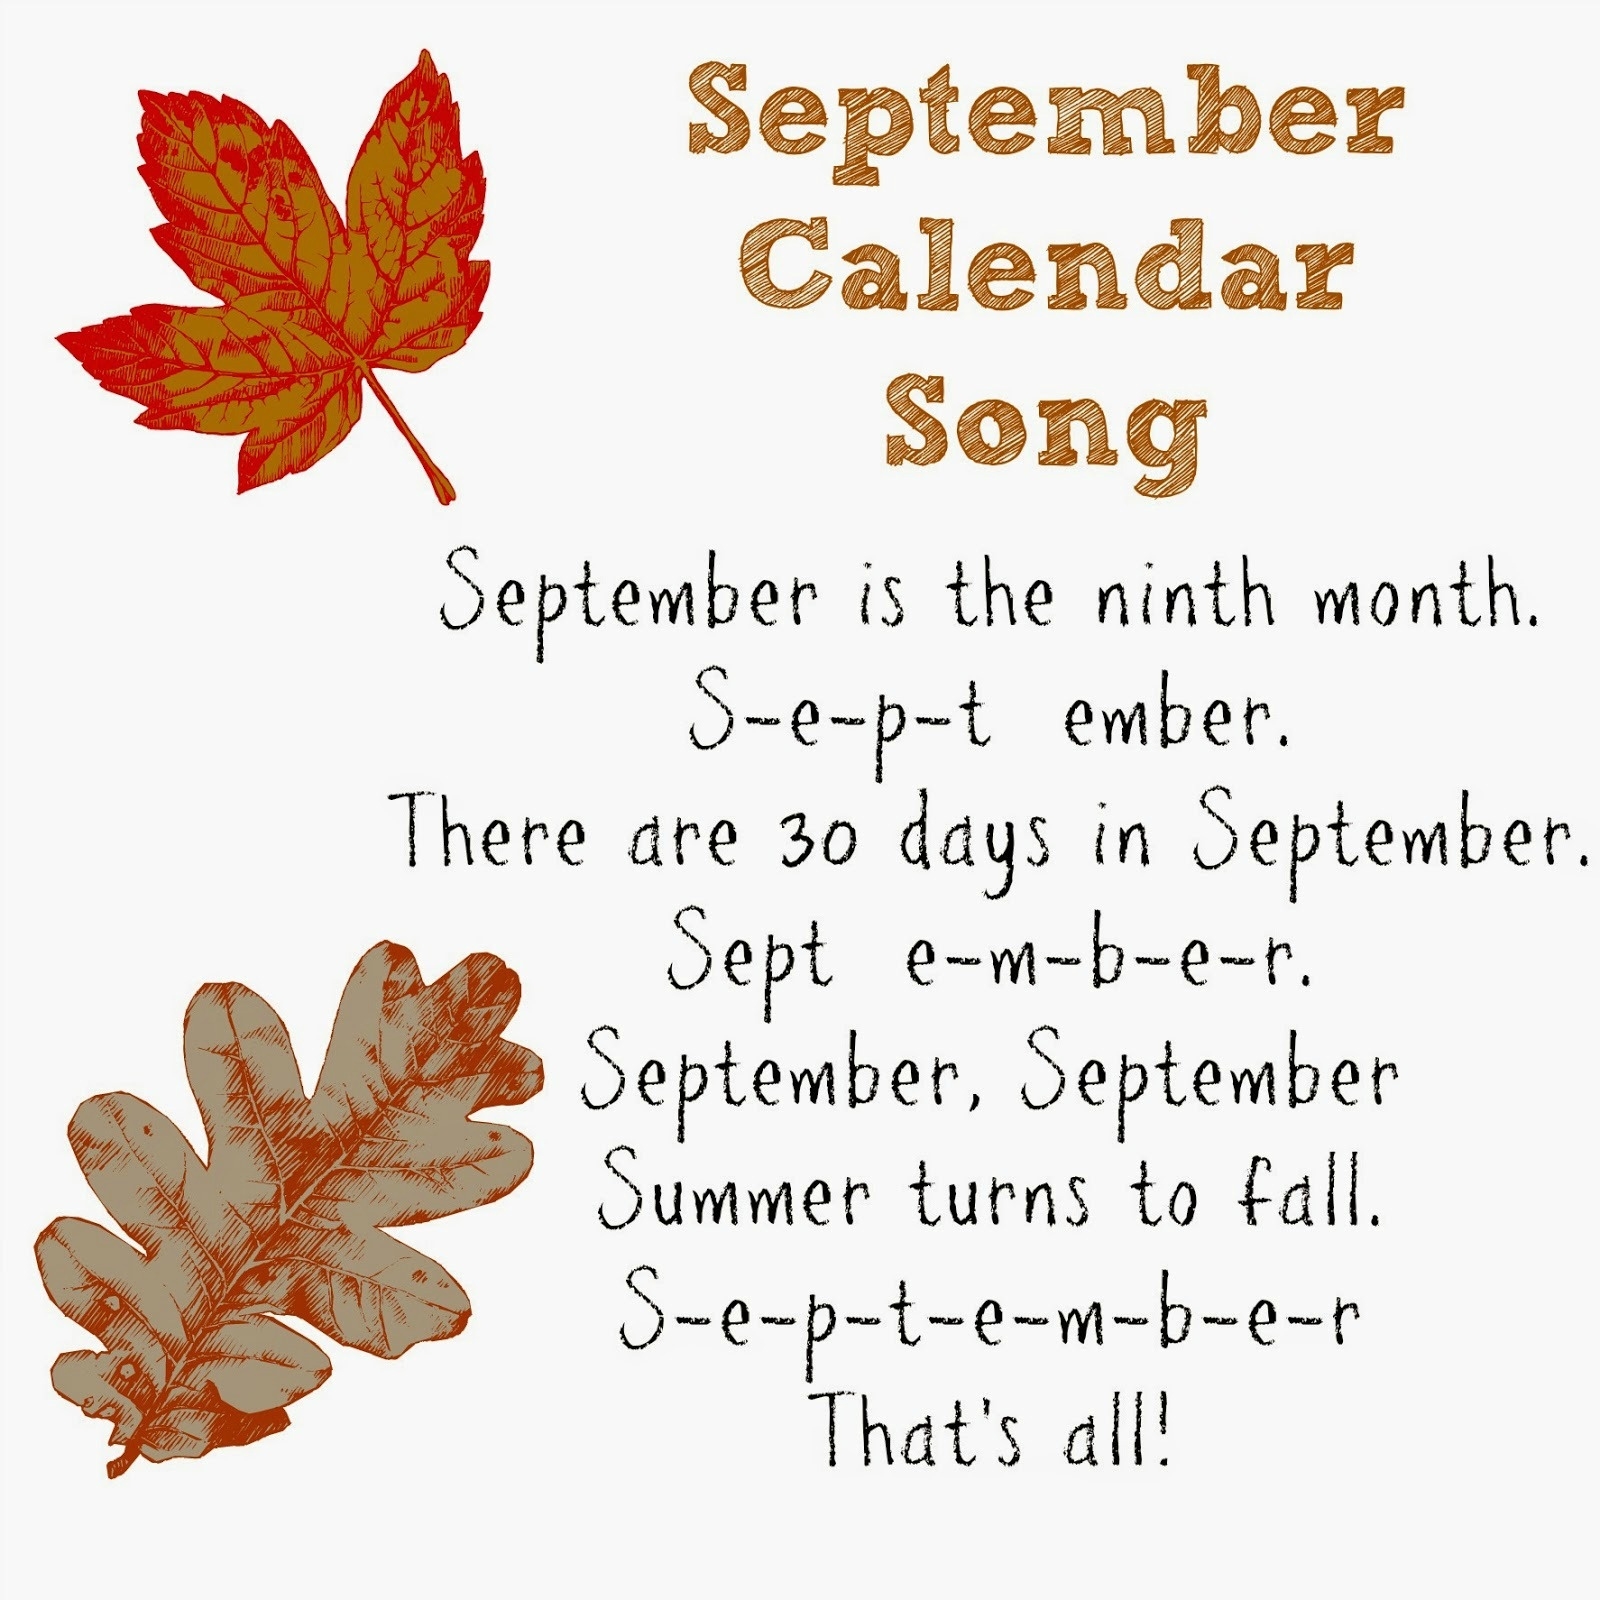 September Calendar Of Special Days Holidays: Free Printable Calendar Calendar Holidays And Special Days